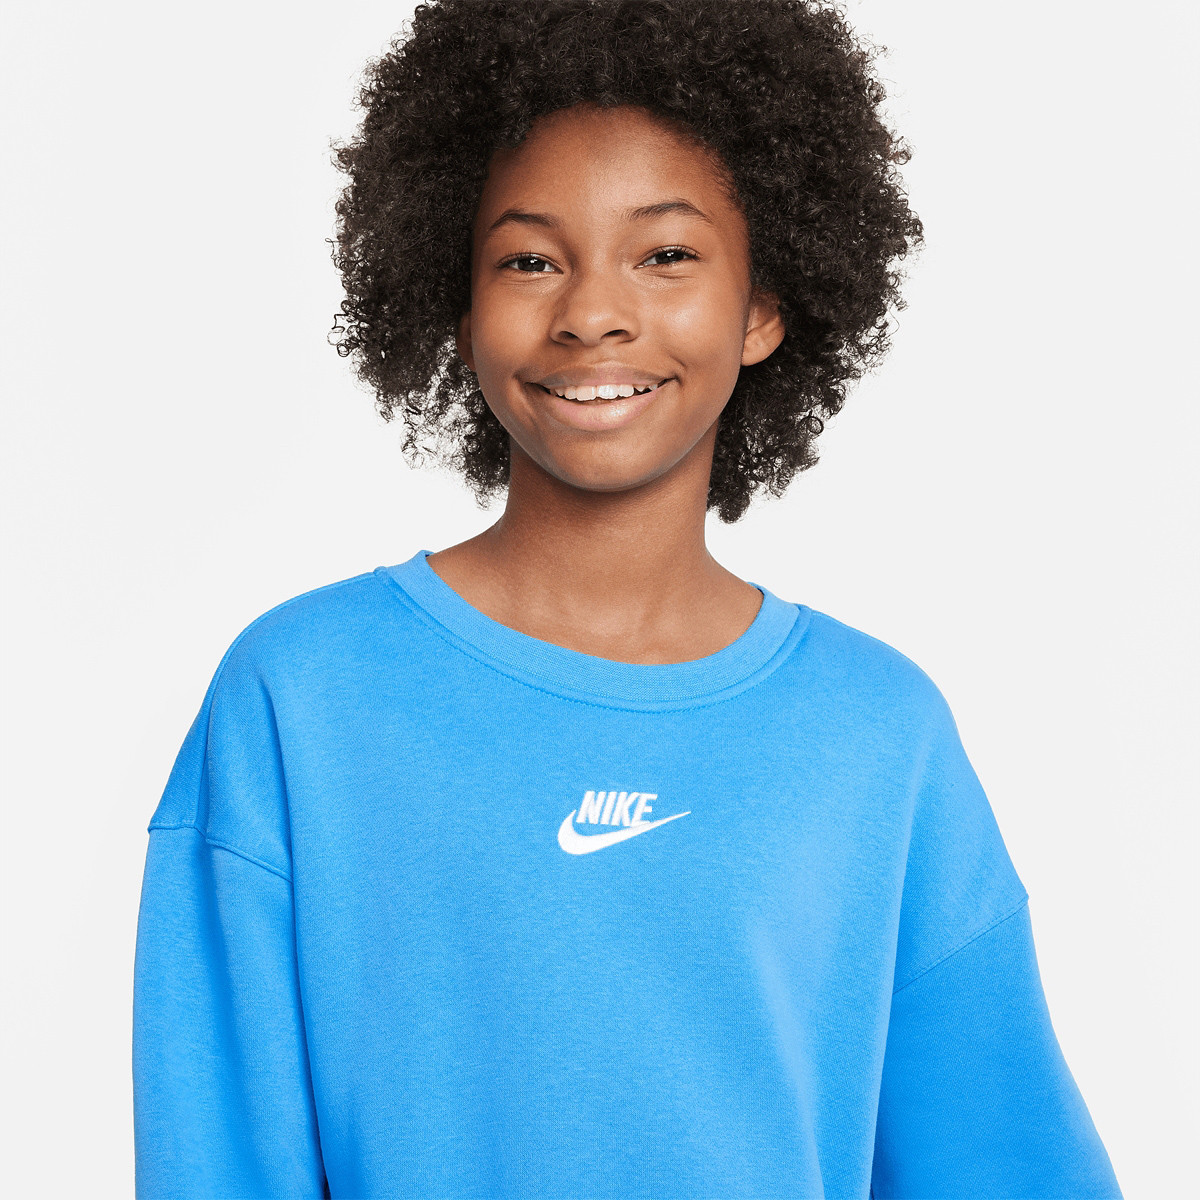 Nike NRG Solo Swoosh Men's Fleece Sweatshirt Marron CV0554-318